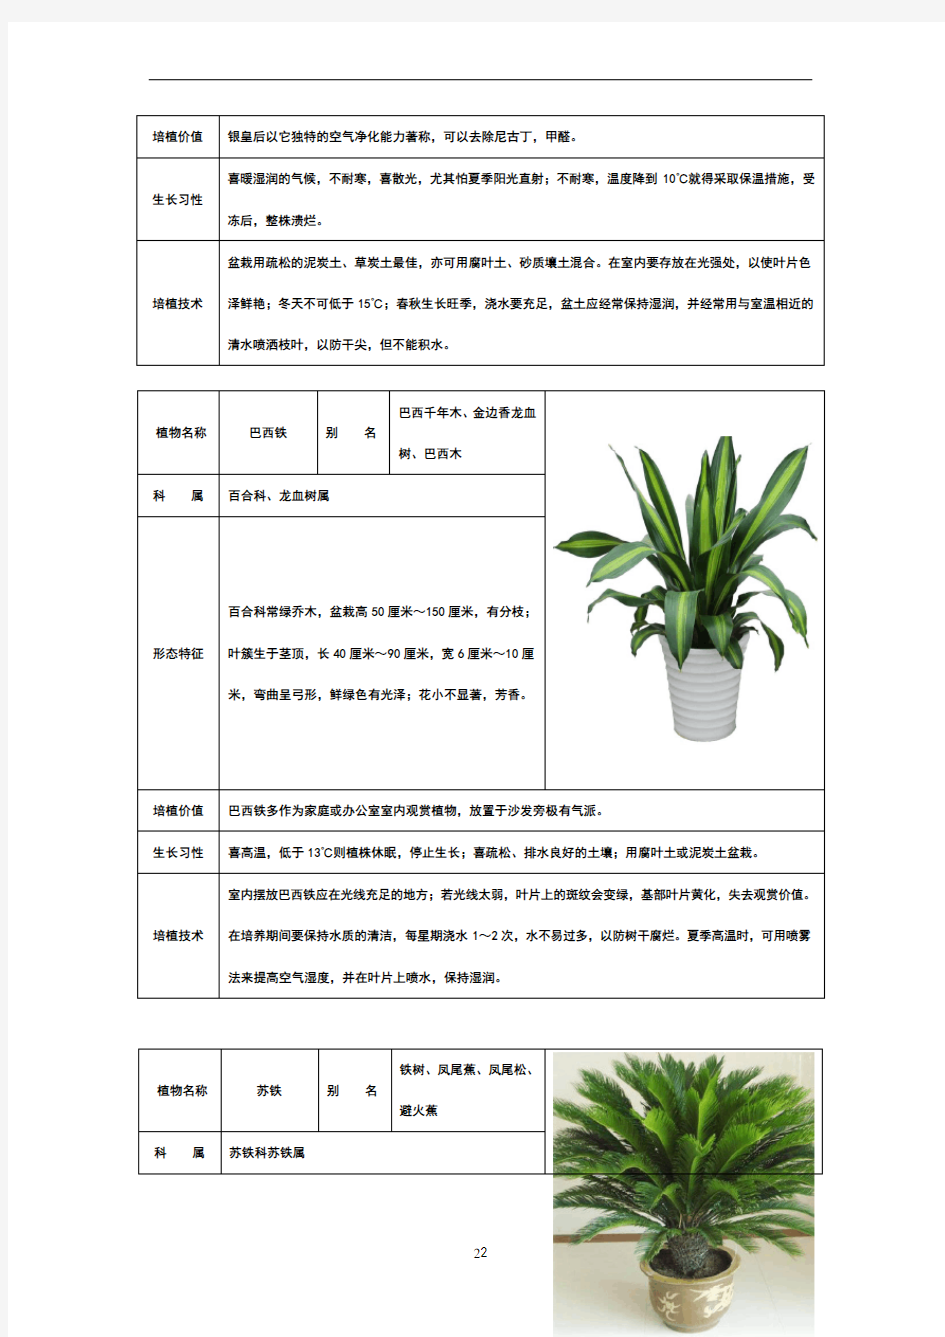 50种常见室内绿化植物介绍